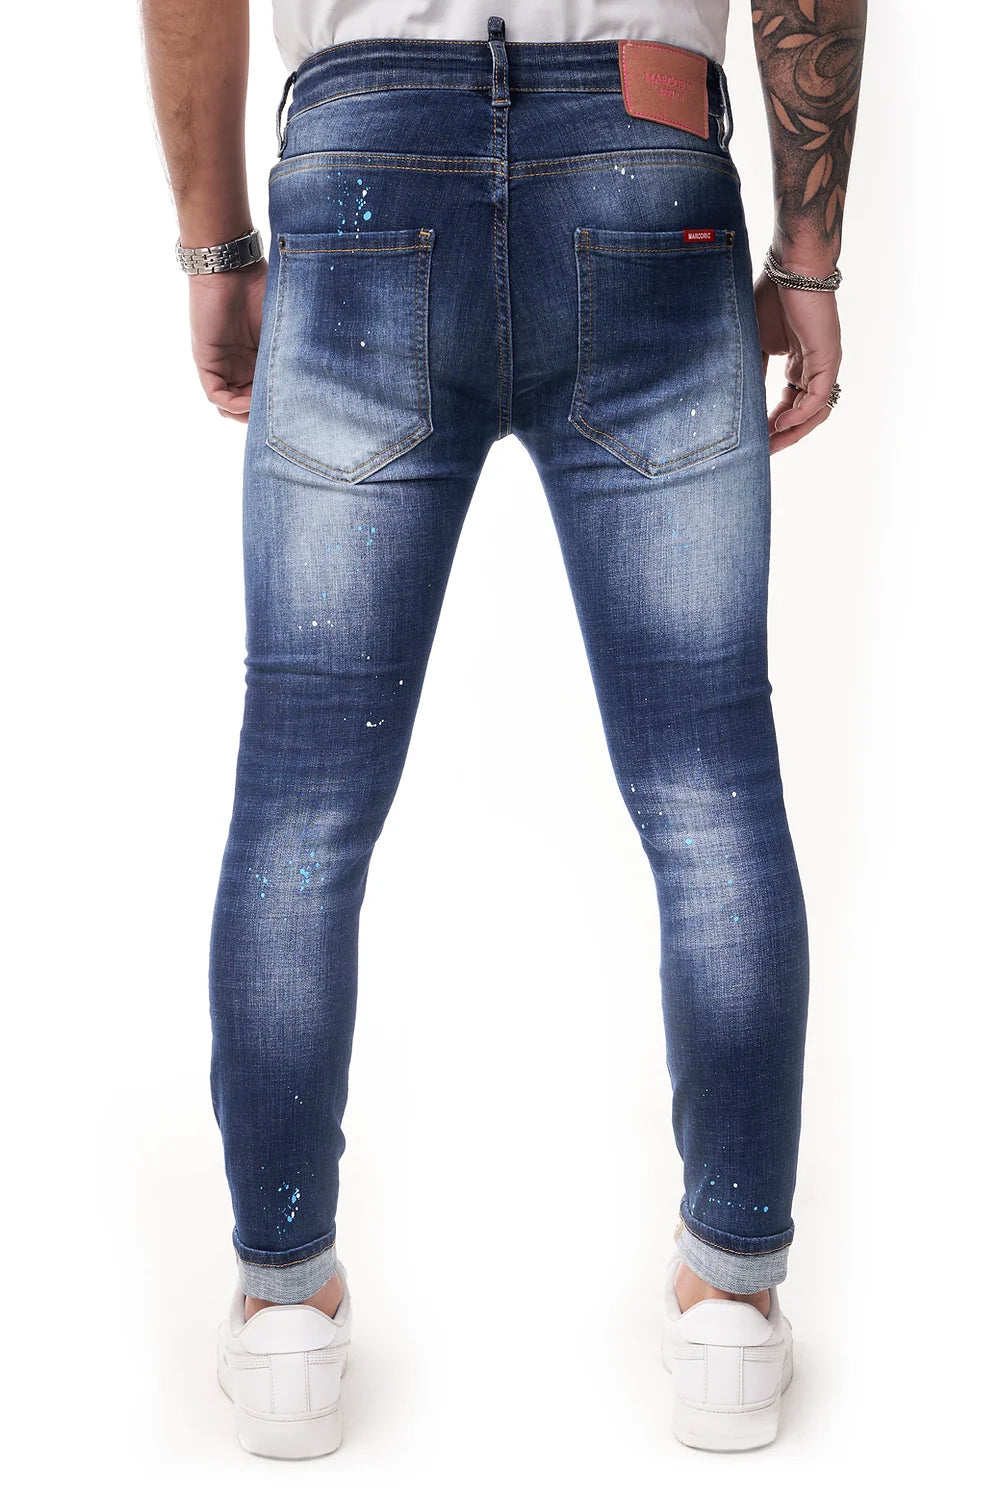 Marcoric Jeans Model E 2295